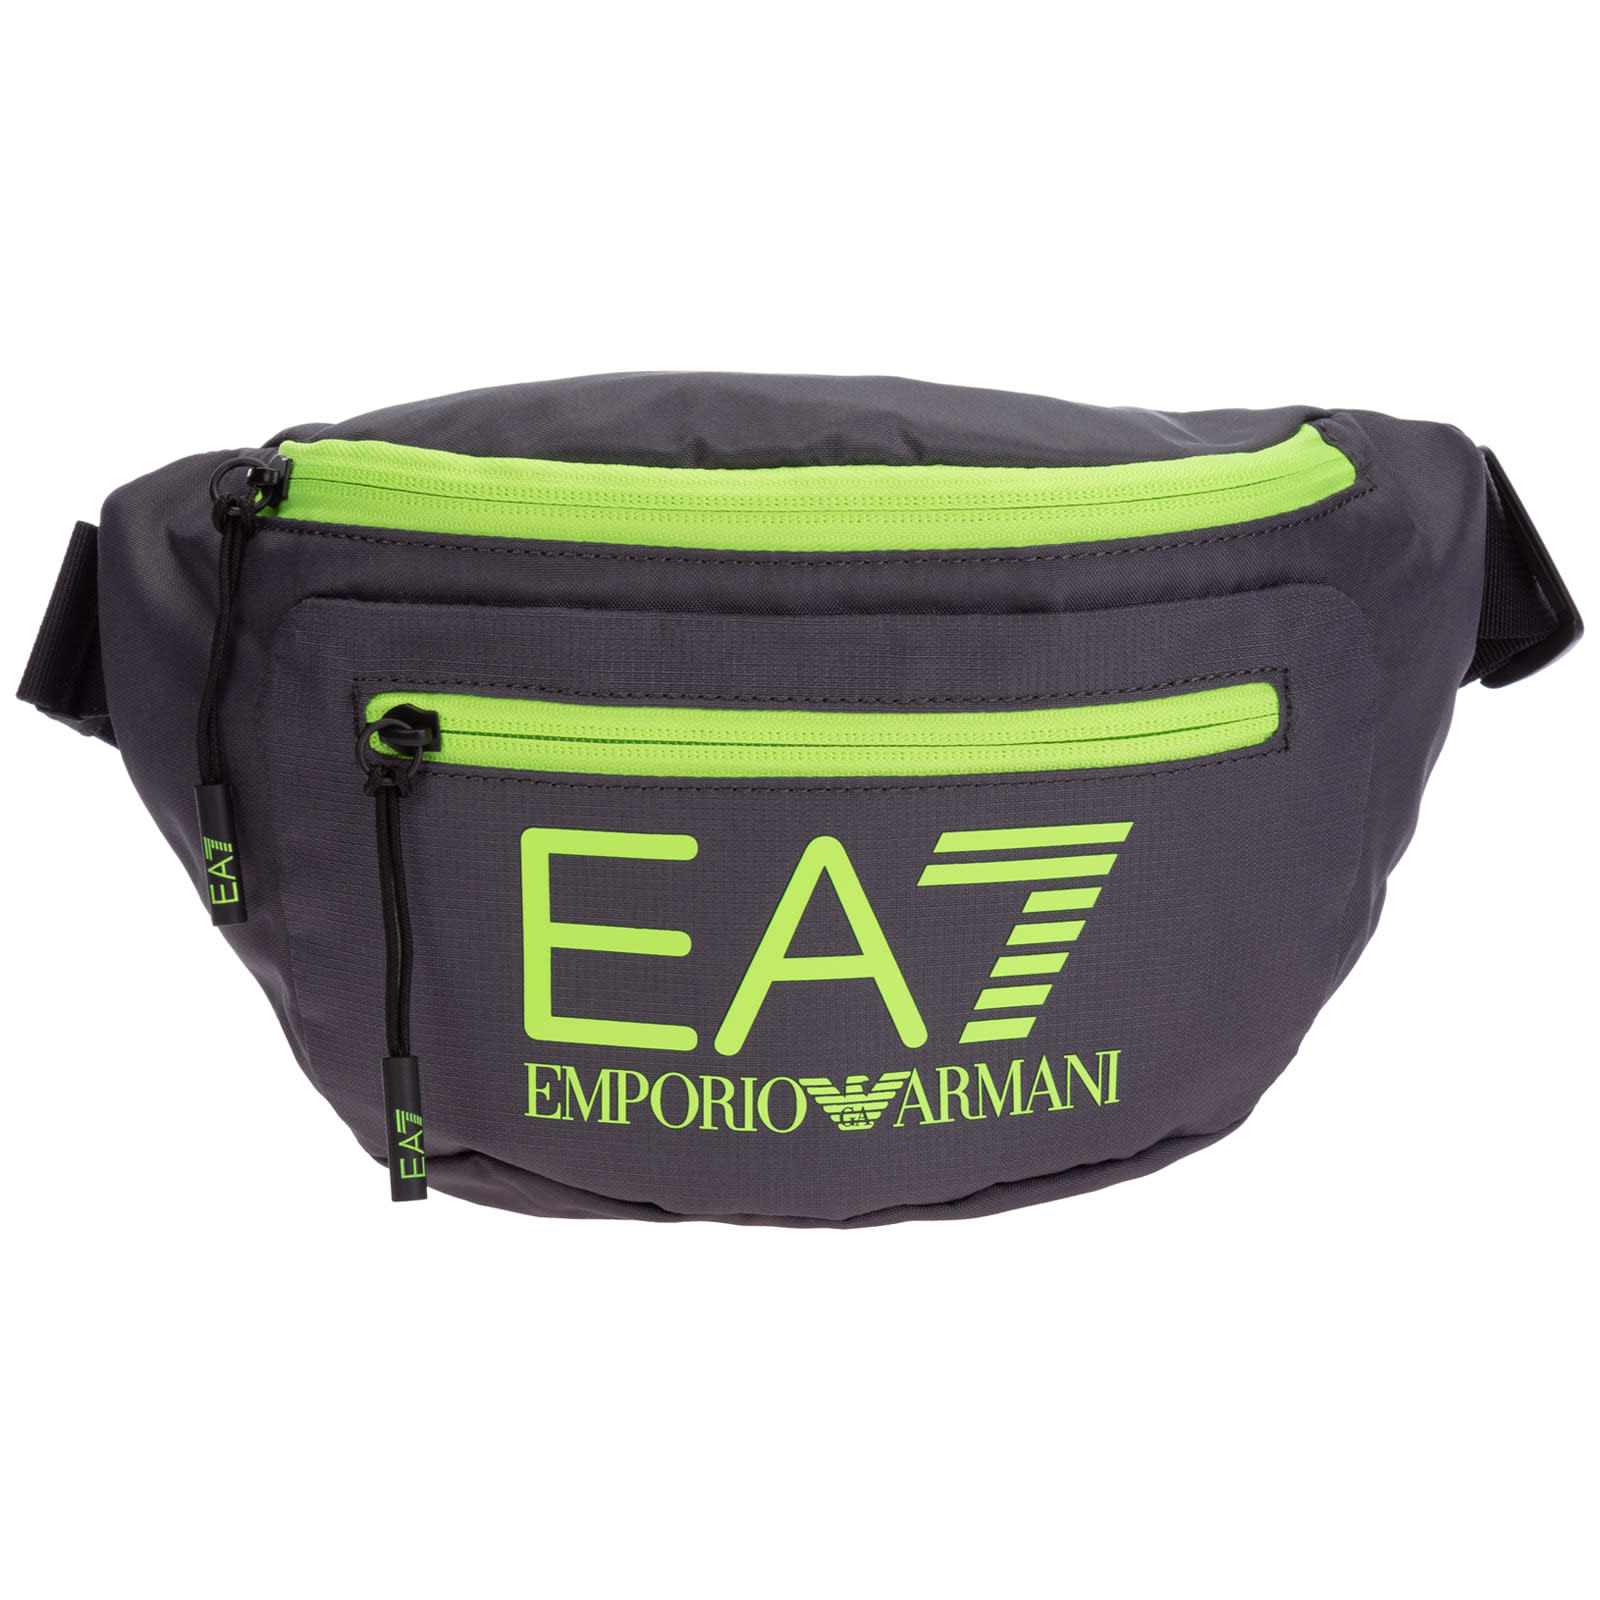 Emporio Armani Ea7 Jazz Original Bum Bag